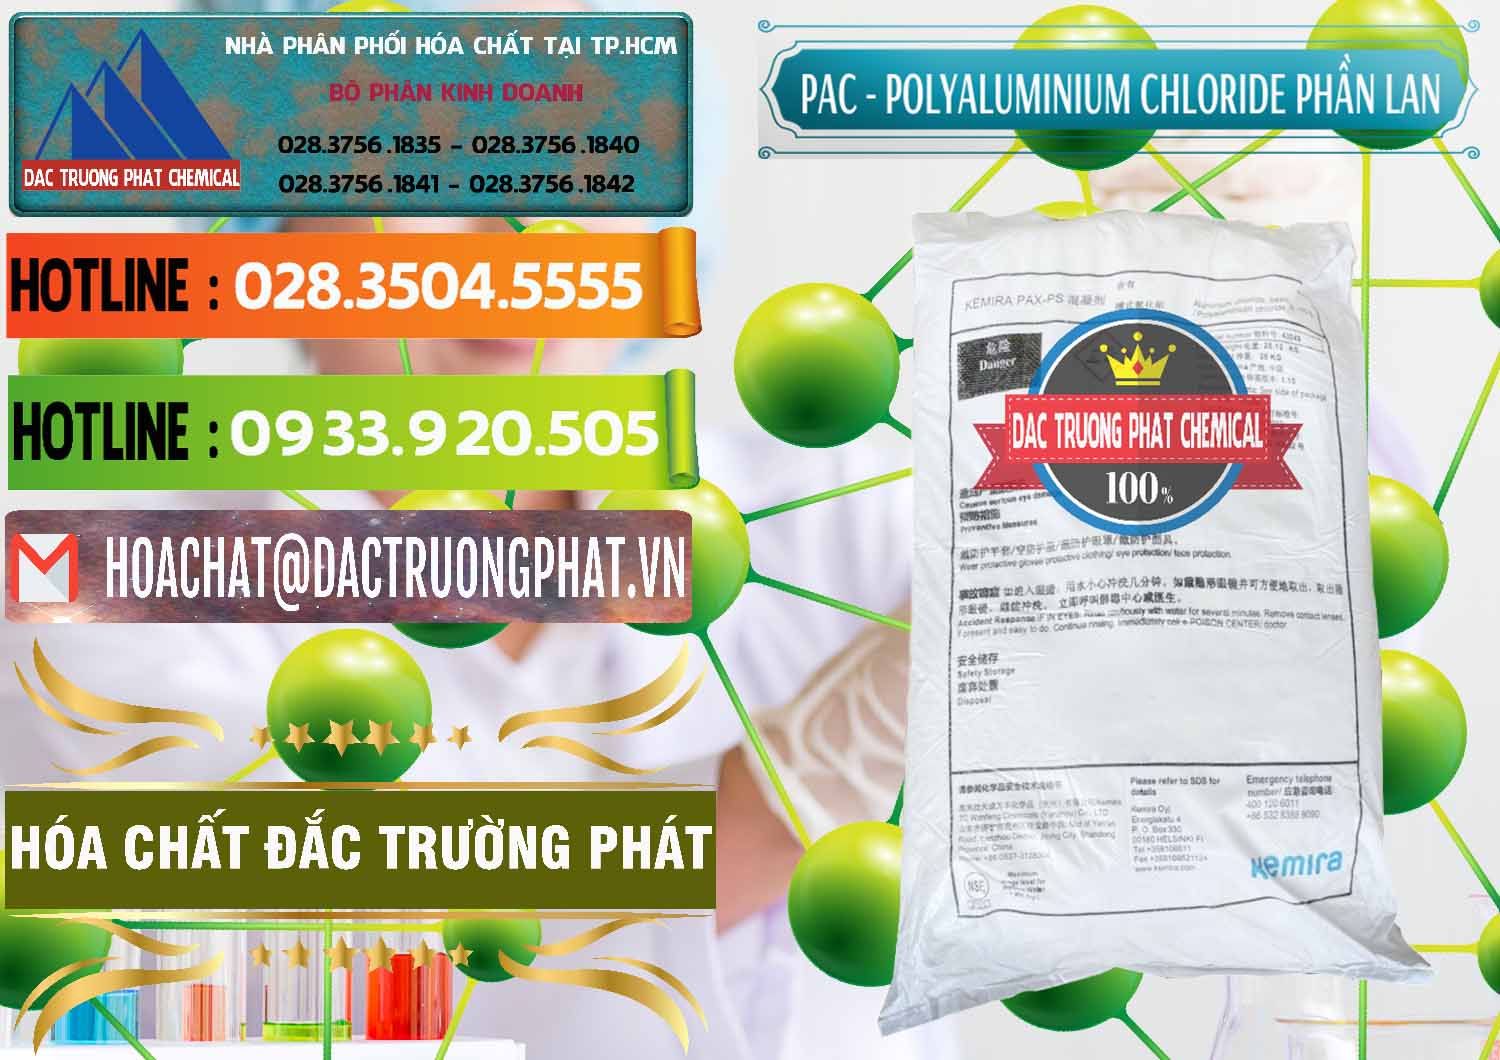 Chuyên kinh doanh và bán PAC - Polyaluminium Chloride Phần Lan Finland - 0383 - Cty chuyên cung cấp - bán hóa chất tại TP.HCM - cungcaphoachat.com.vn